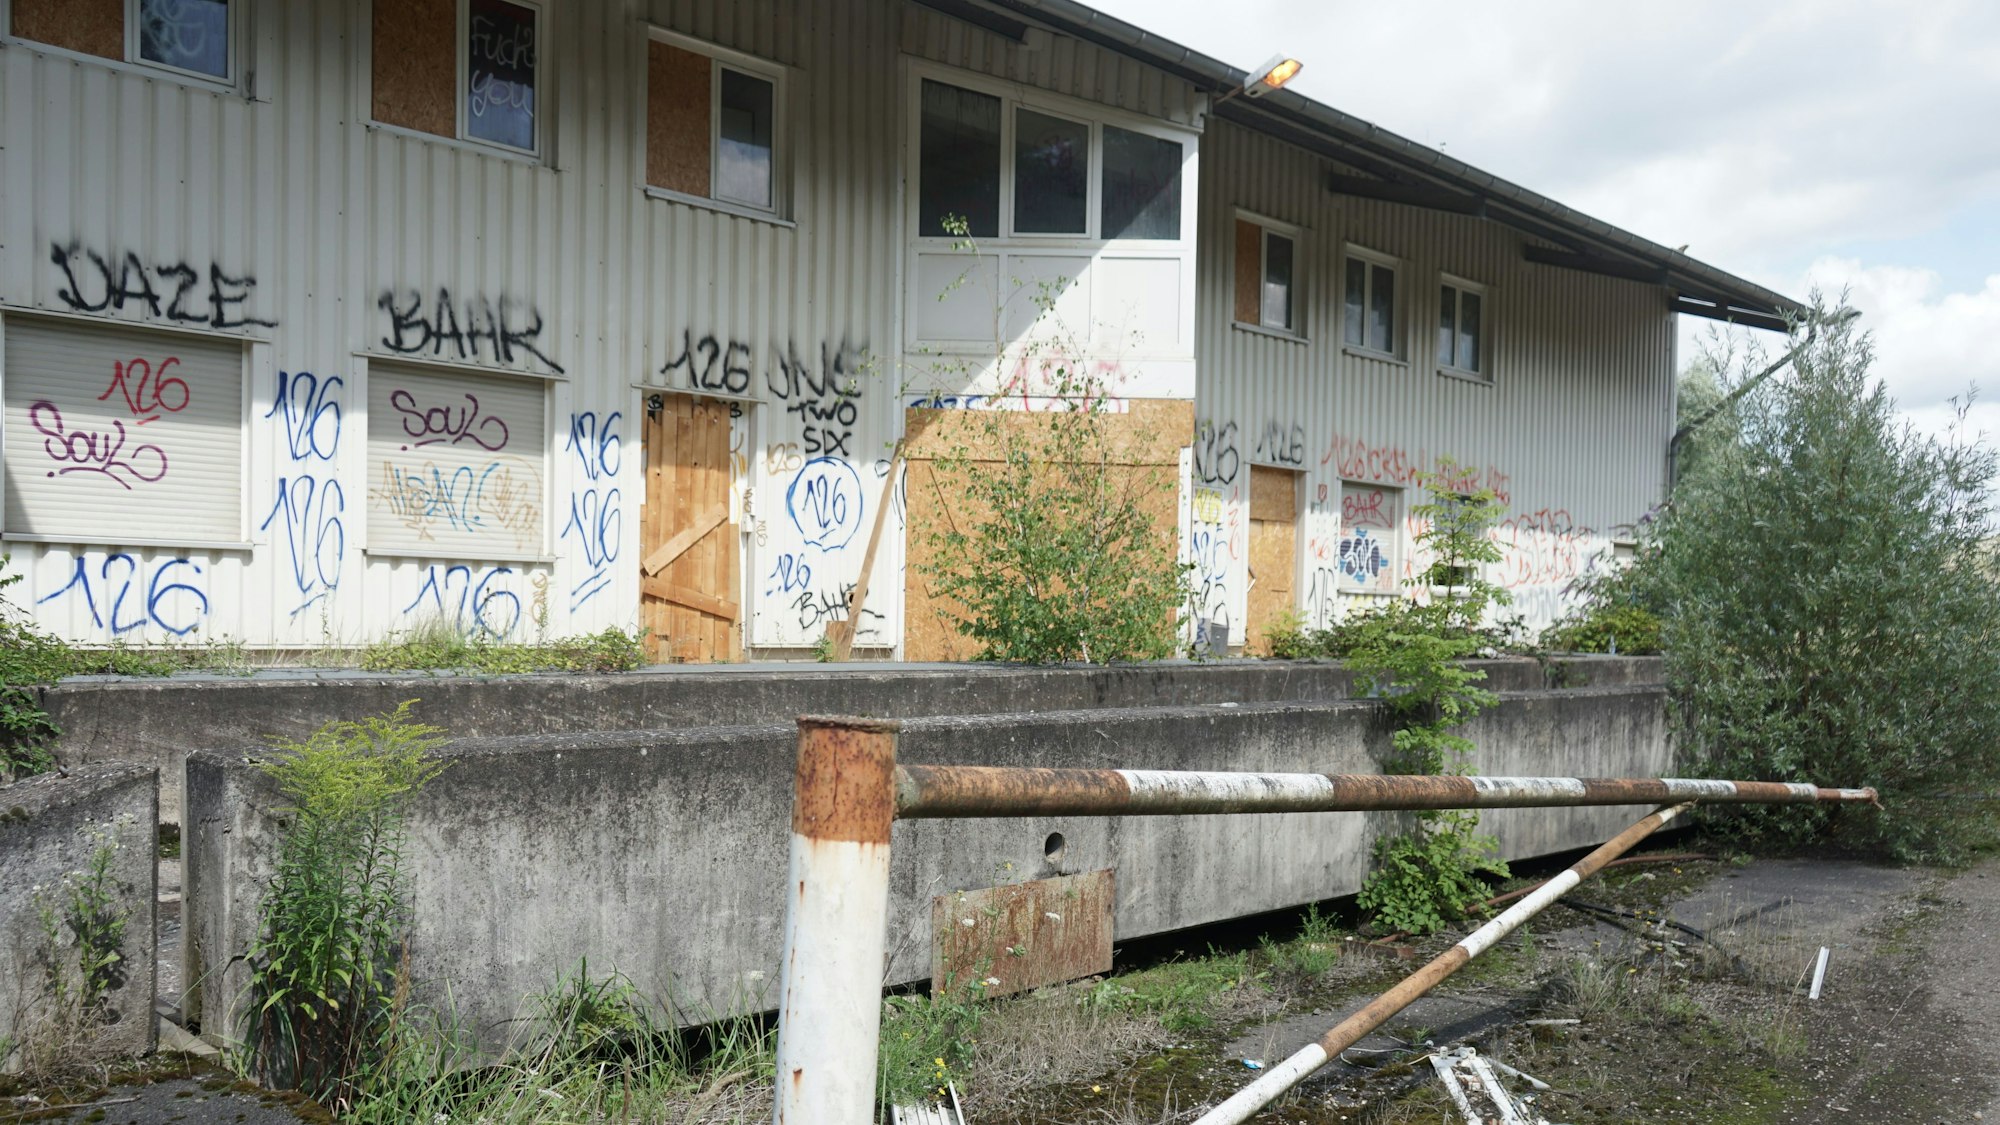 Ein mit Graffiti bemaltes und mit Pflanzen überwuchertes Gebäude auf dem Gelände der Grube Winter.